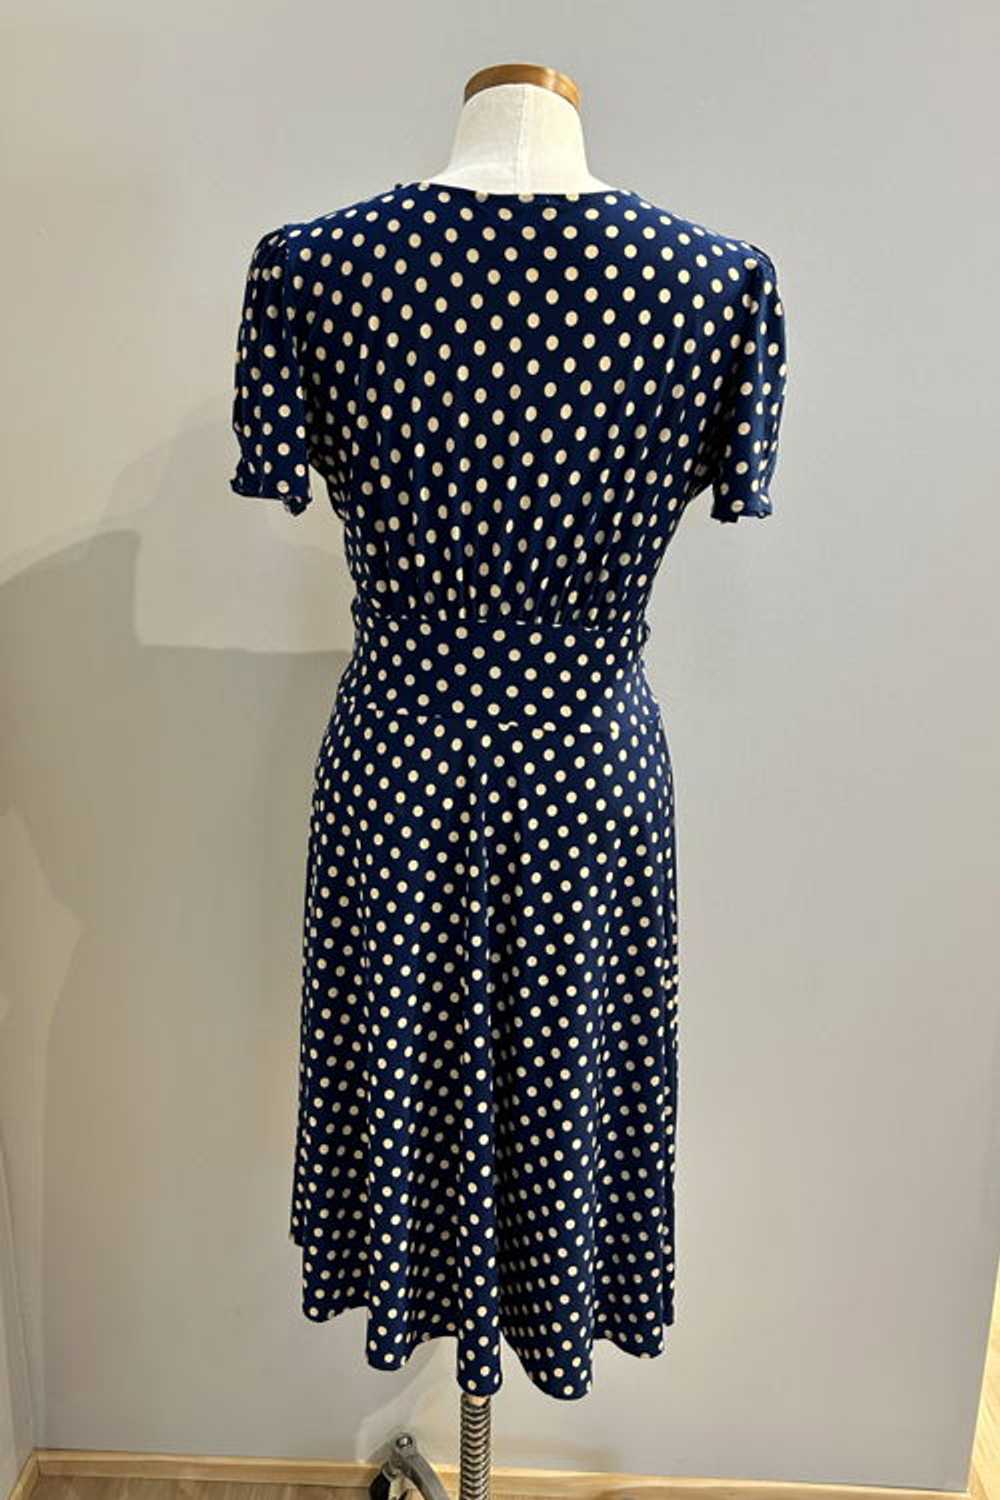 Karina Dresses Megan Navy with Taupe Polka Dots - image 2